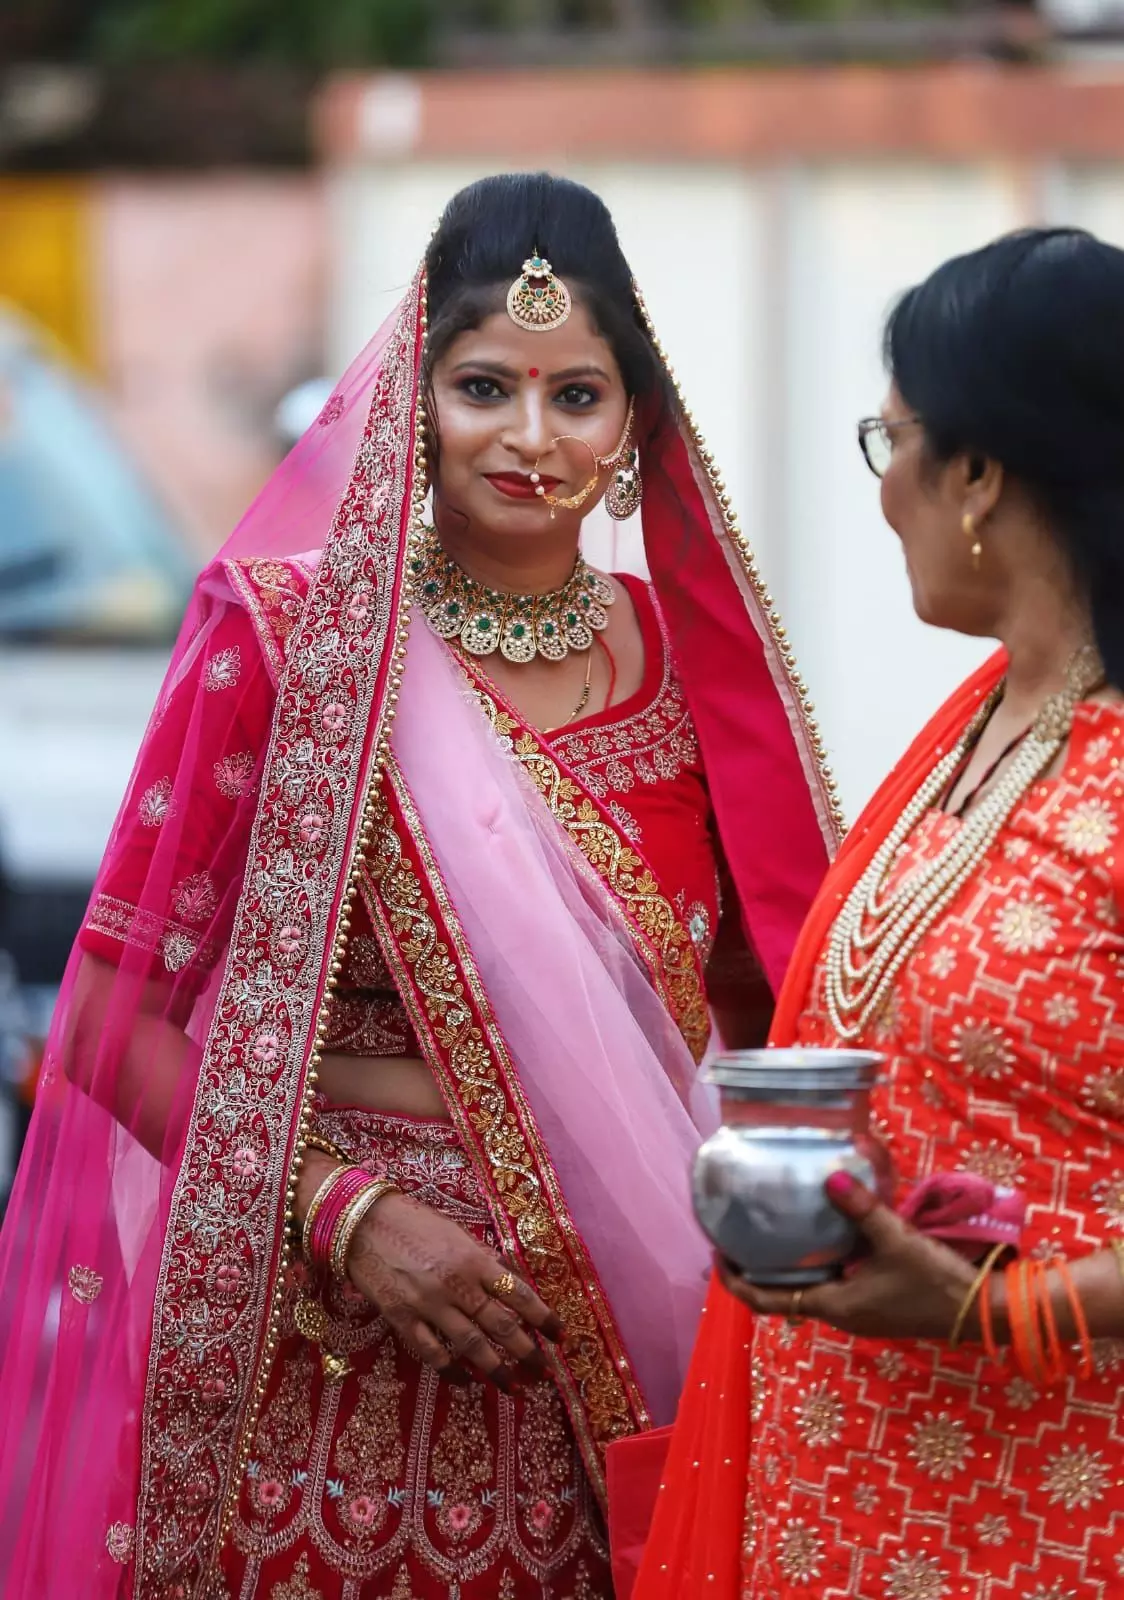 करवा चौथ की थाली, नया लहंगा और सोलह श्रृंगार... सीमा हैदर ने सचिन के लिए  रखा व्रत - noida Karva Chauth thali new lehenga makeup pakistani Seema  Haider is fasting for Sachin